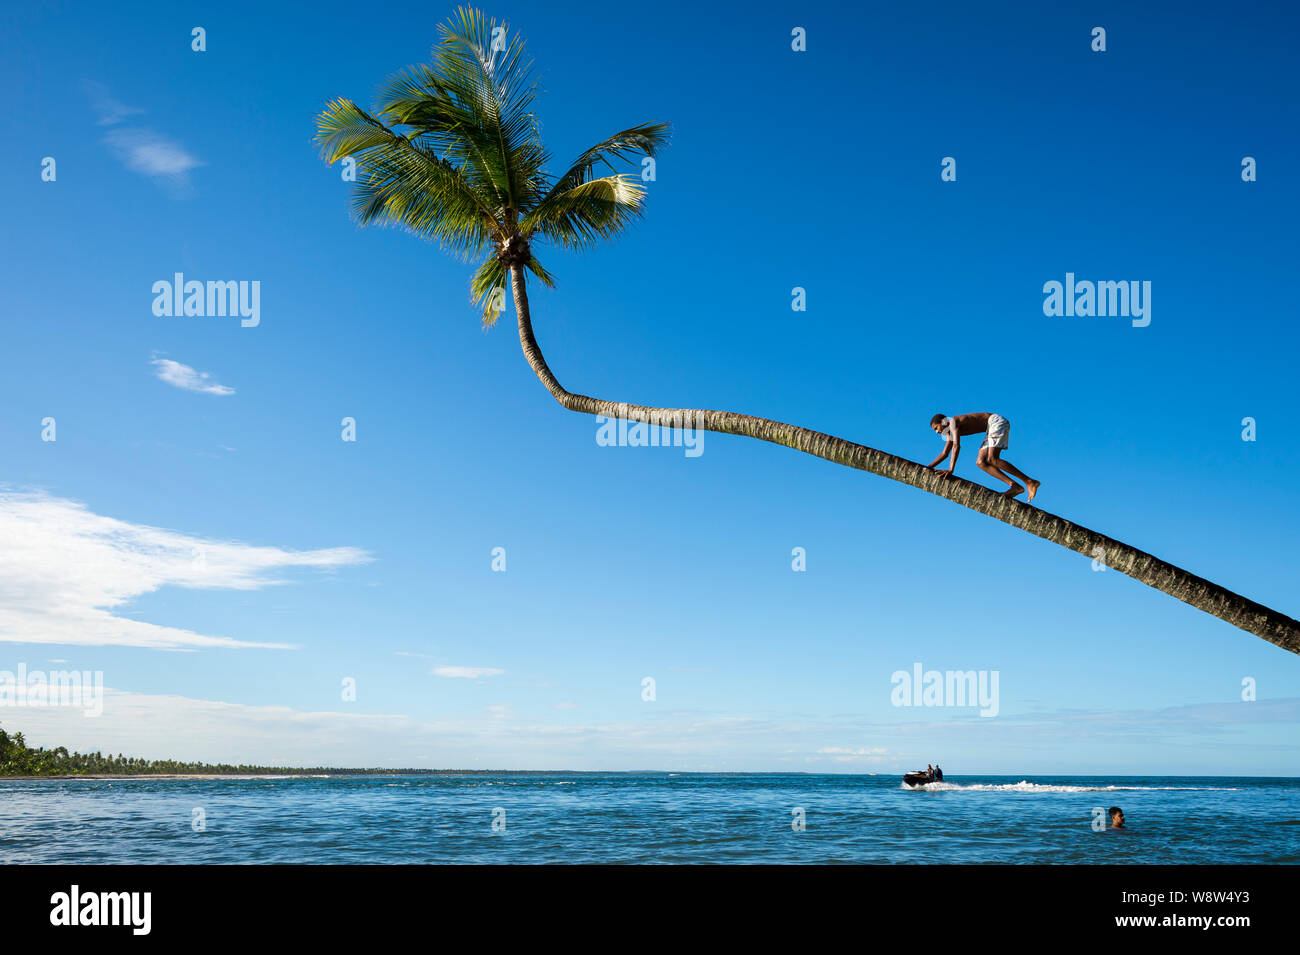 BAHIA, BRASILIEN - MÄRZ 2018: Junge Brasilianer klettern eine Kokospalme überhängende tropische Gewässer an einem Strand in einem kleinen ländlichen Dorf. Stockfoto